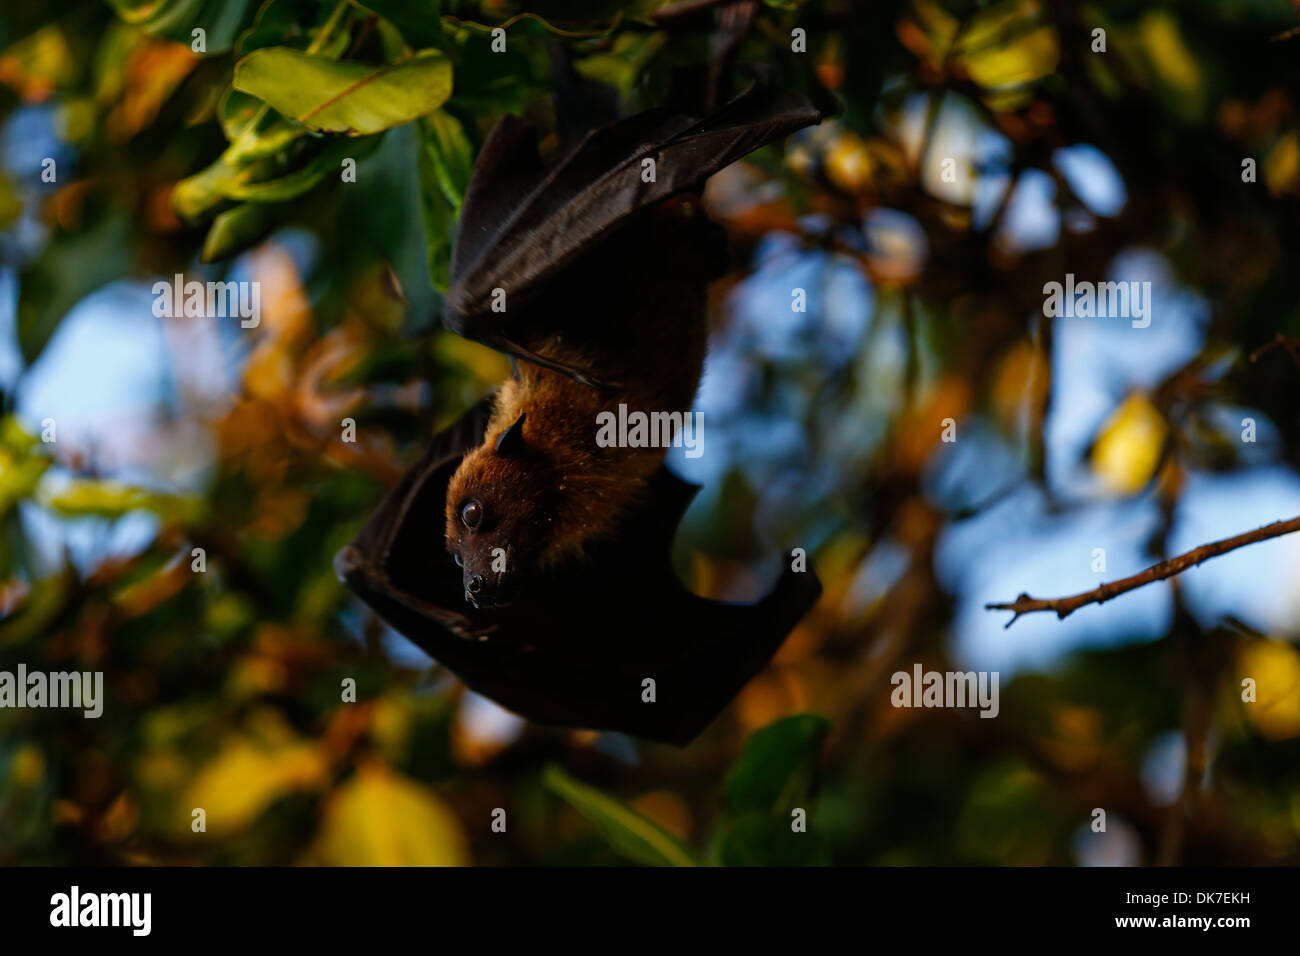 large upside down hanging fruit bat on the maldives Stock Photo